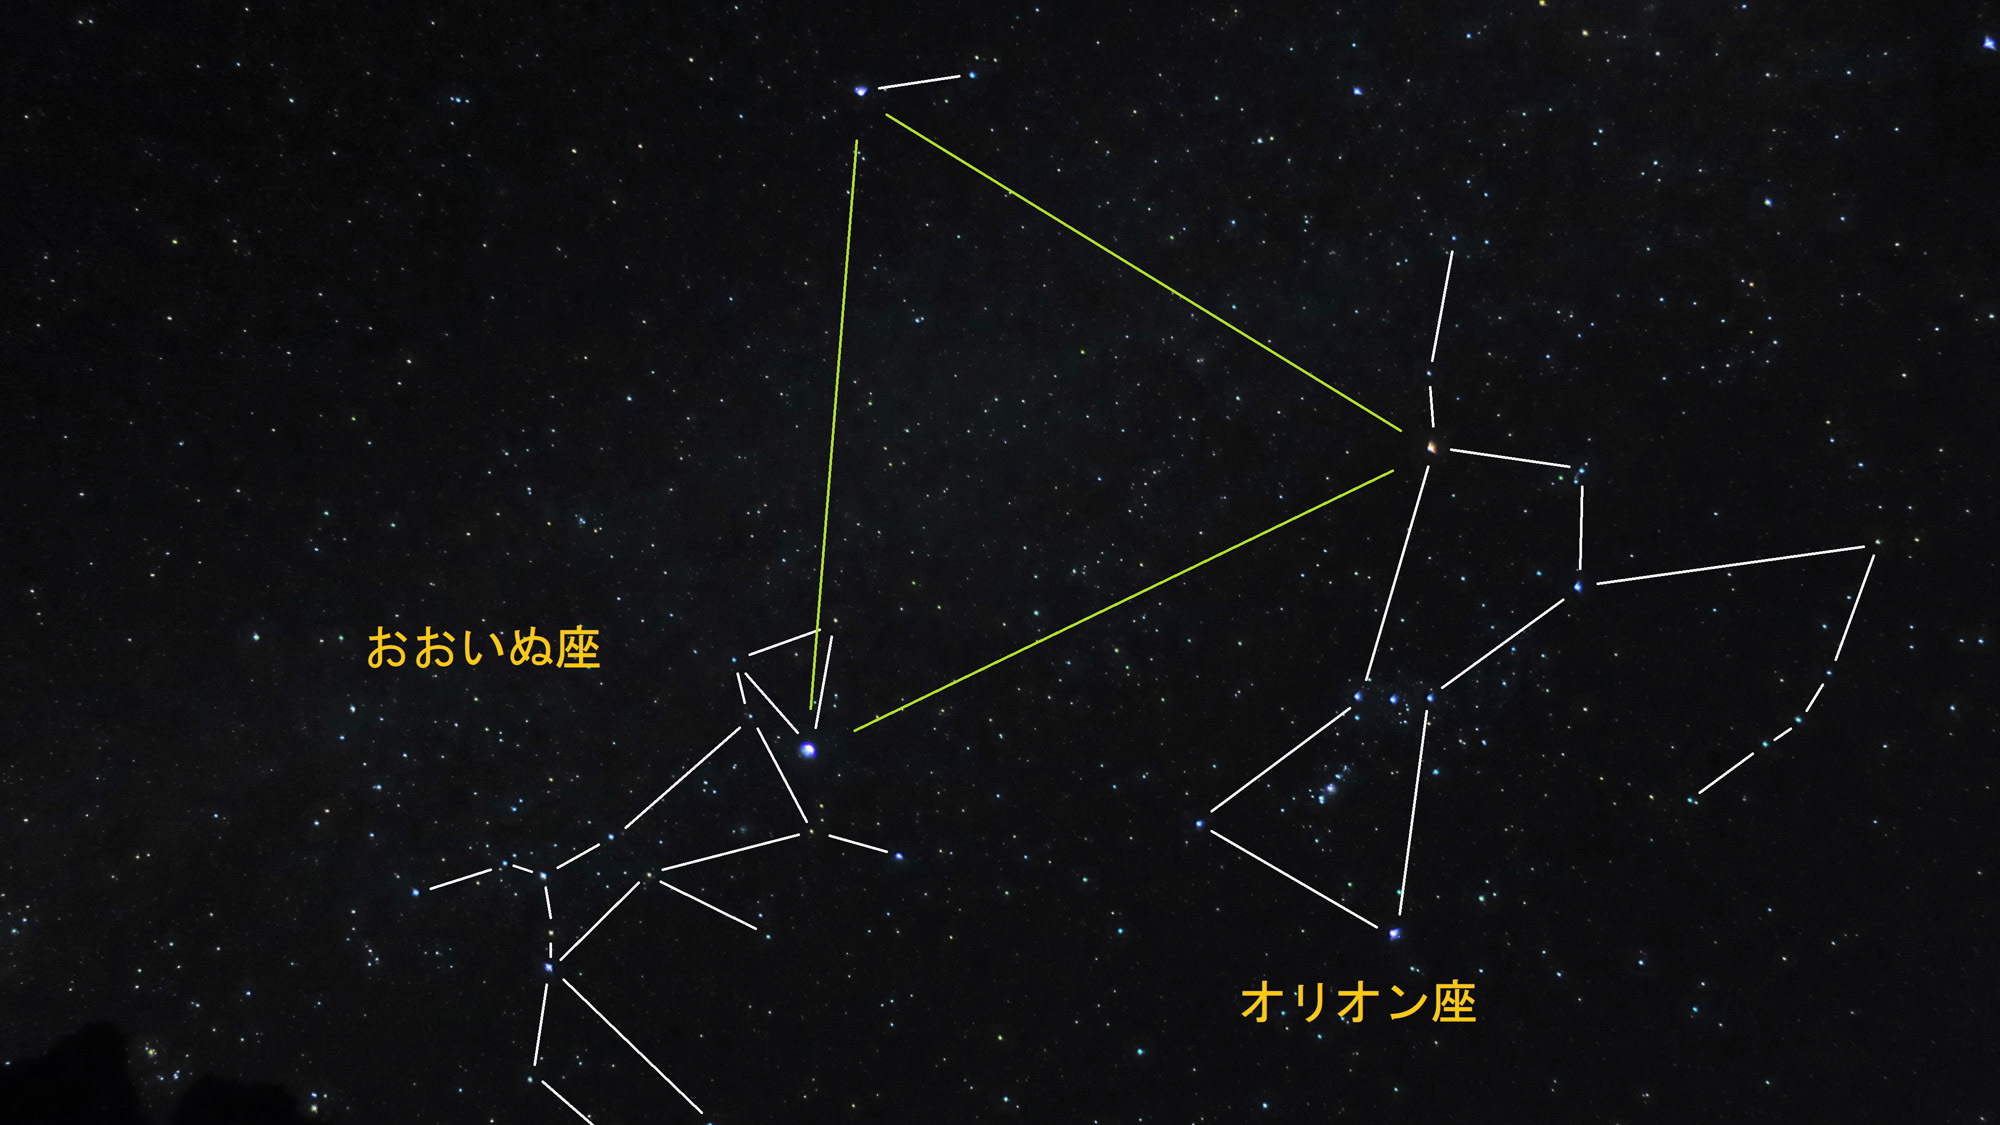 【星の紹介】天然のプラネタリウムをお楽しみ下さい